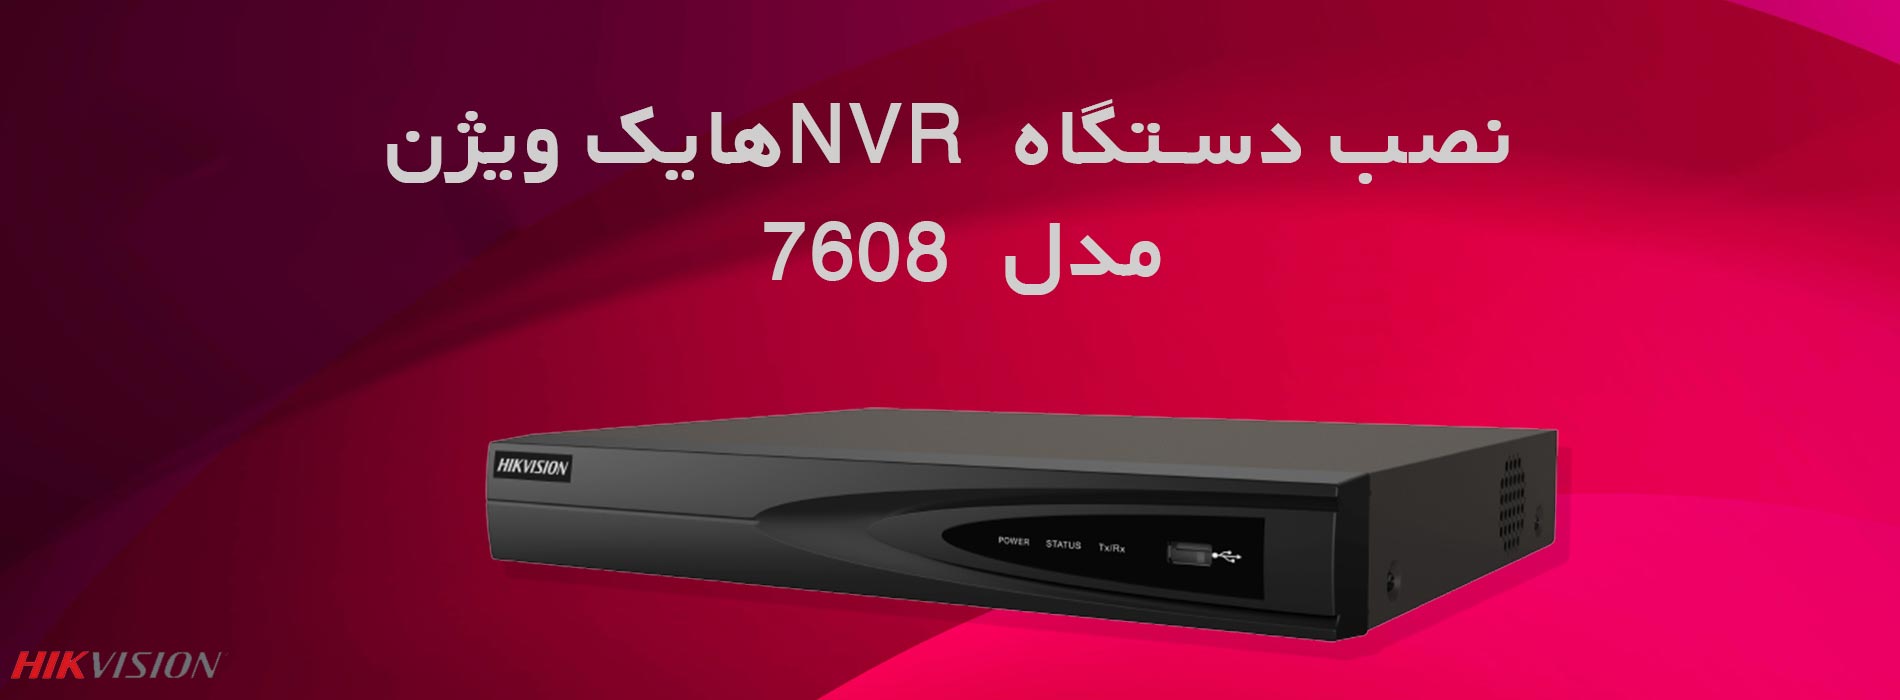 نصب دستگاه NVR هایک ویژن 7608